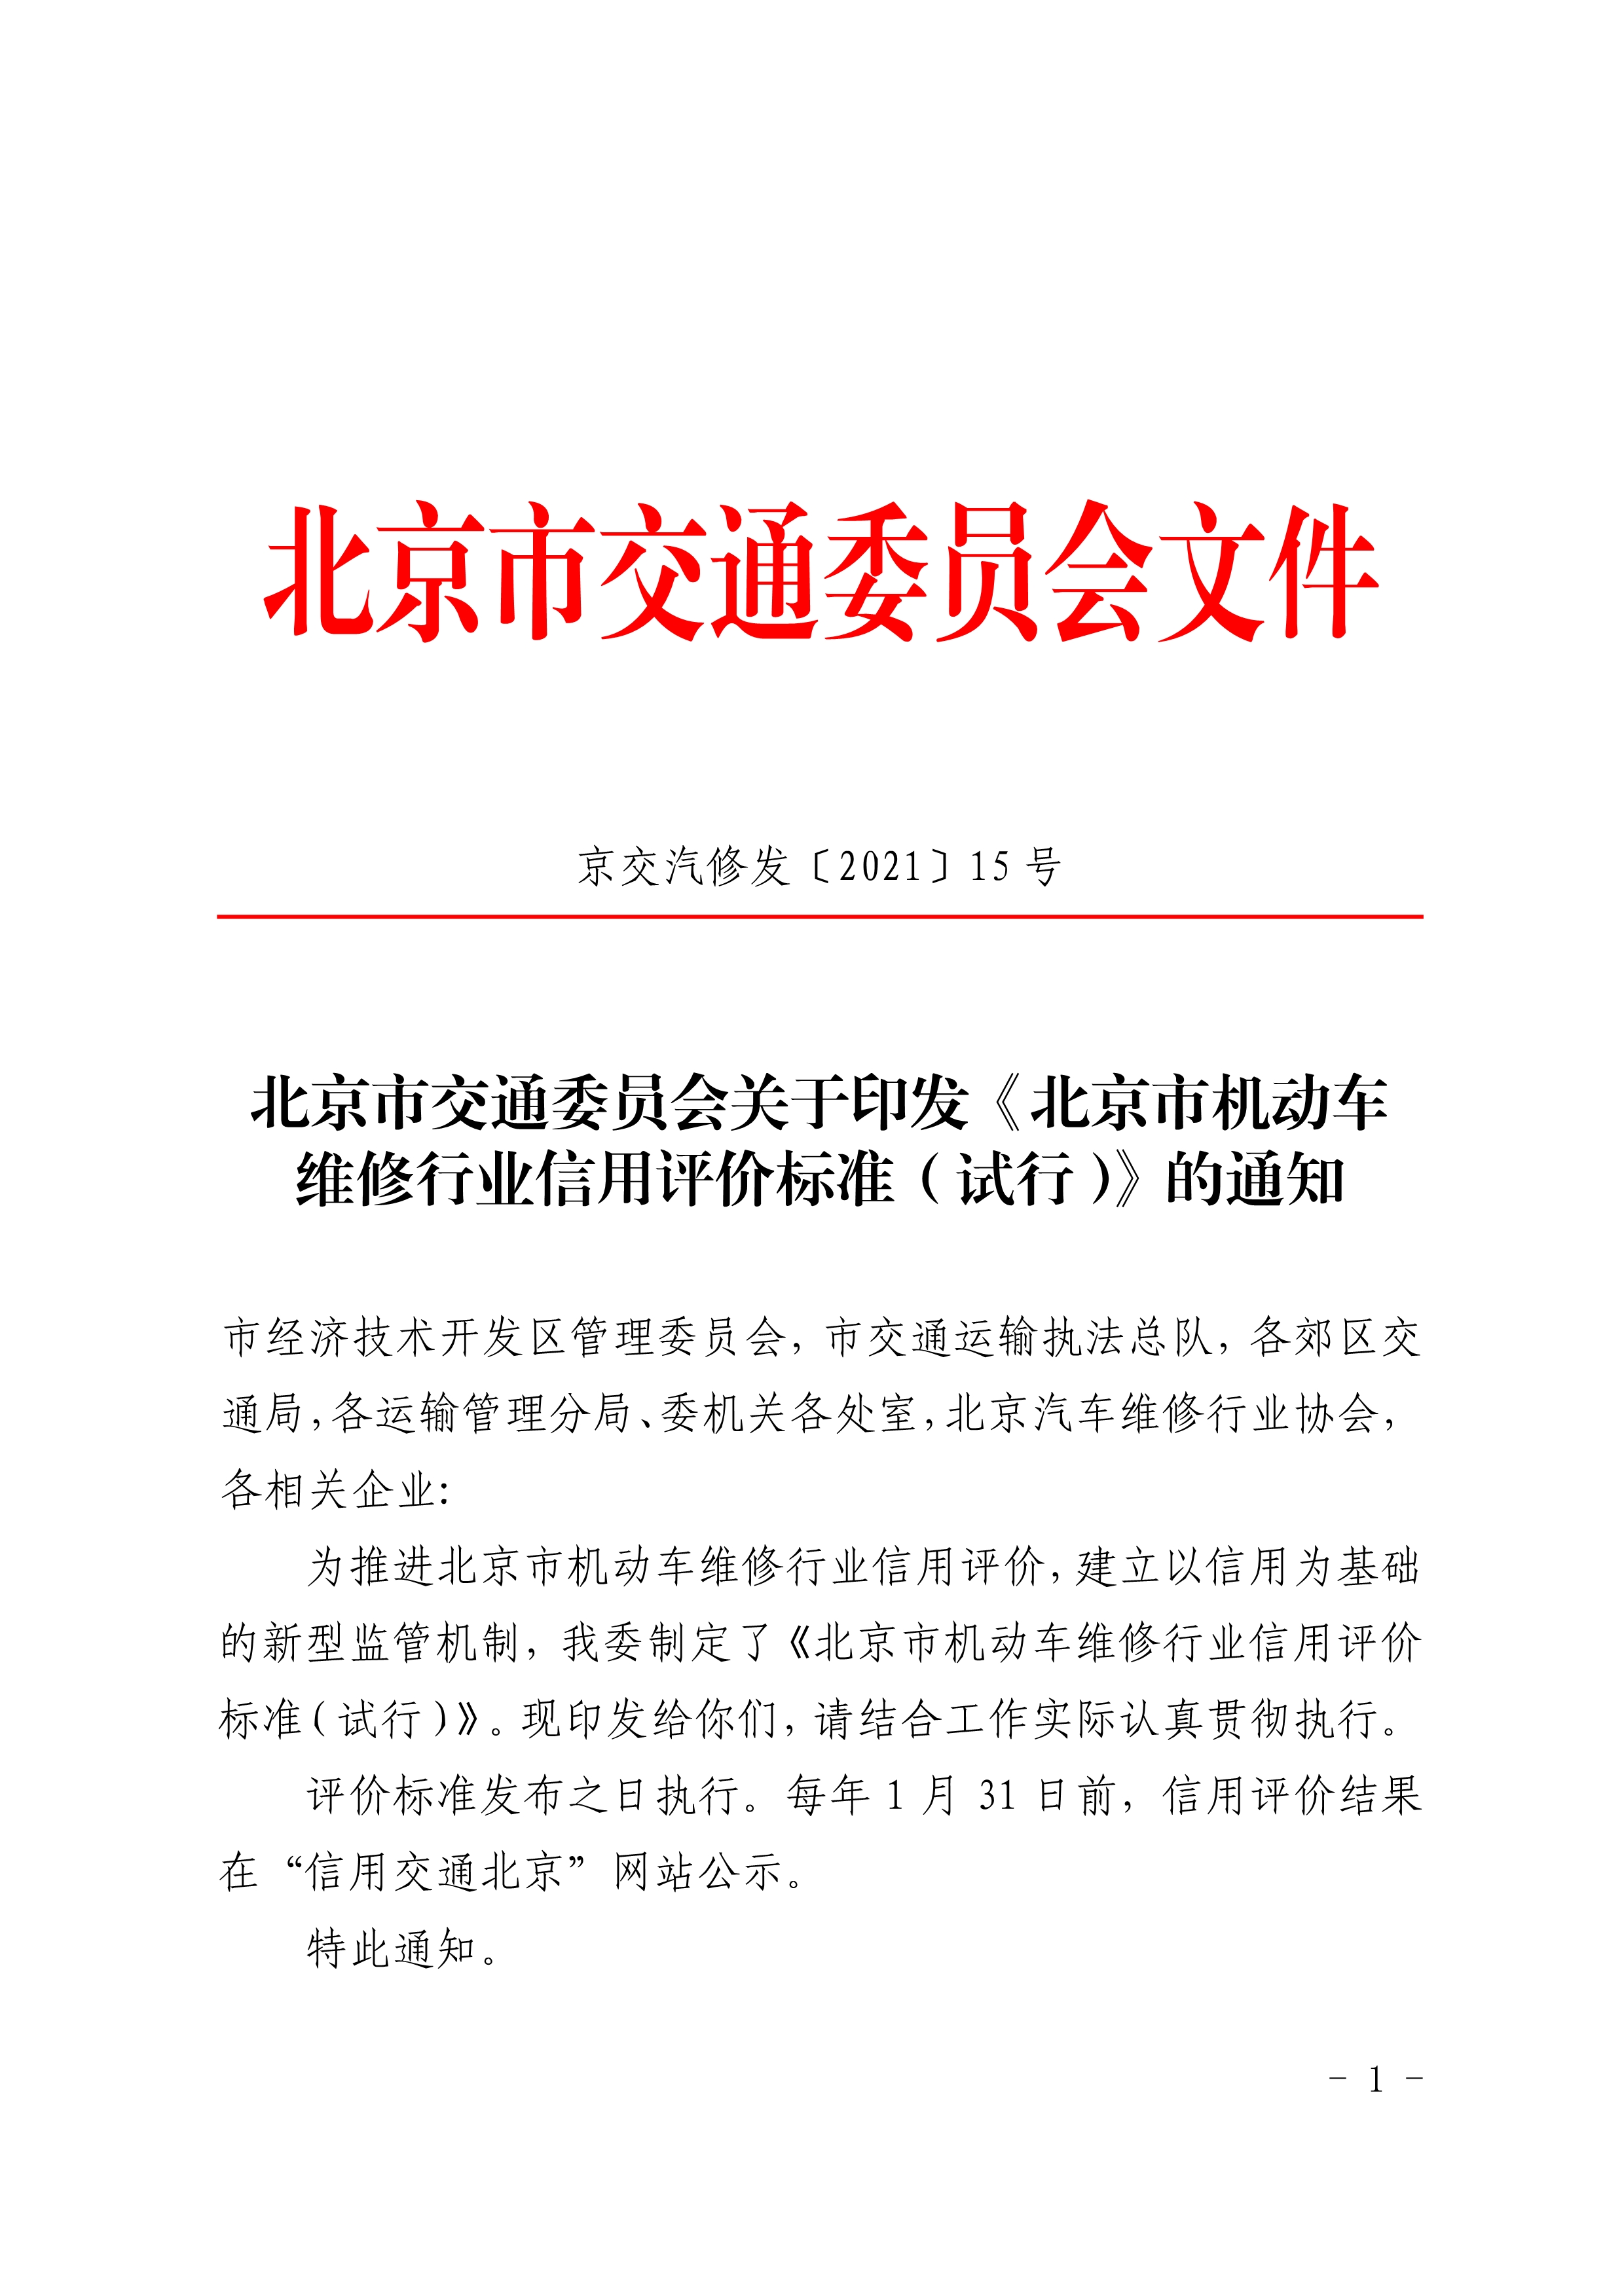 北京市交通委员会关于印发《北京市机动车 维修行业信用评价标准（试行）》的通知(图1)